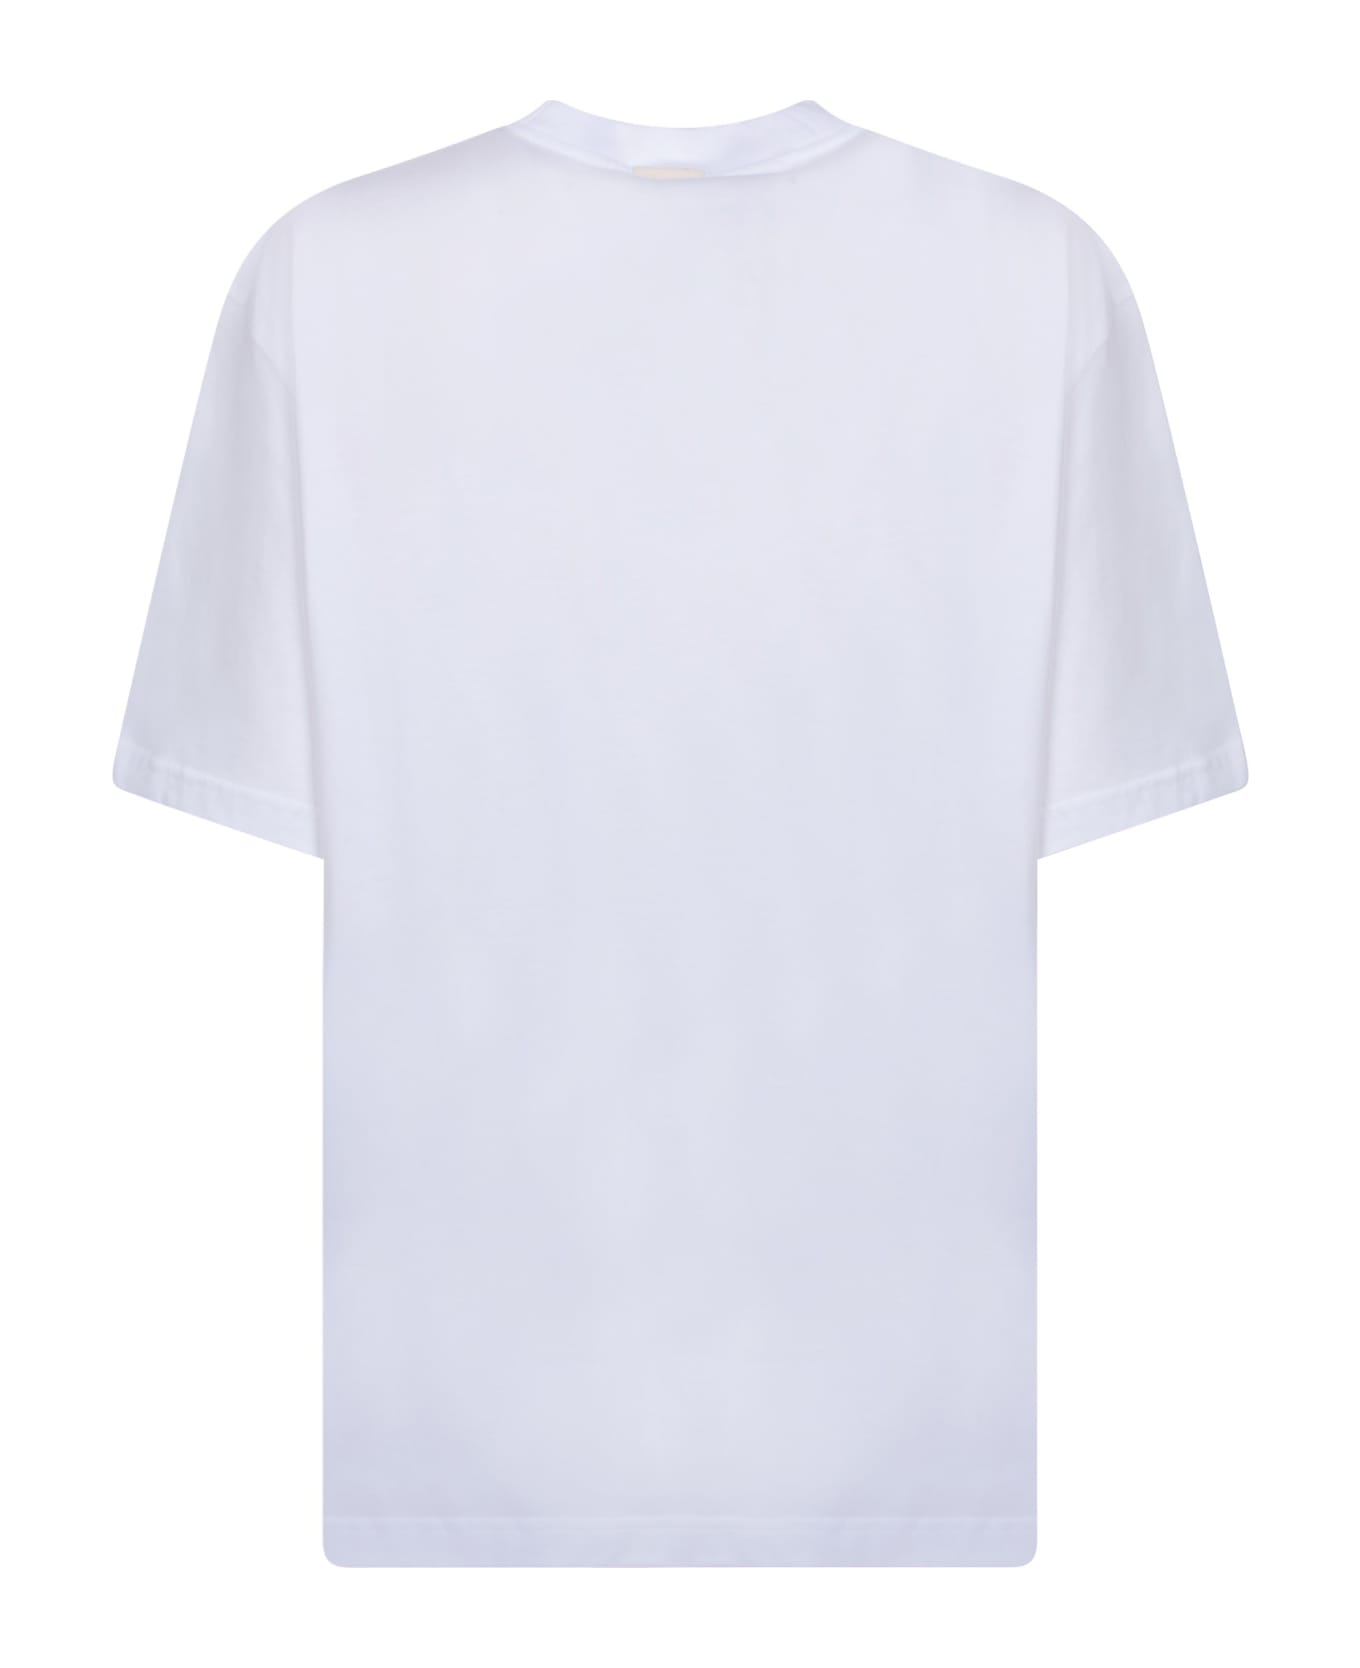 Sunnei White Head Of Fashion T-shirt - White Tシャツ